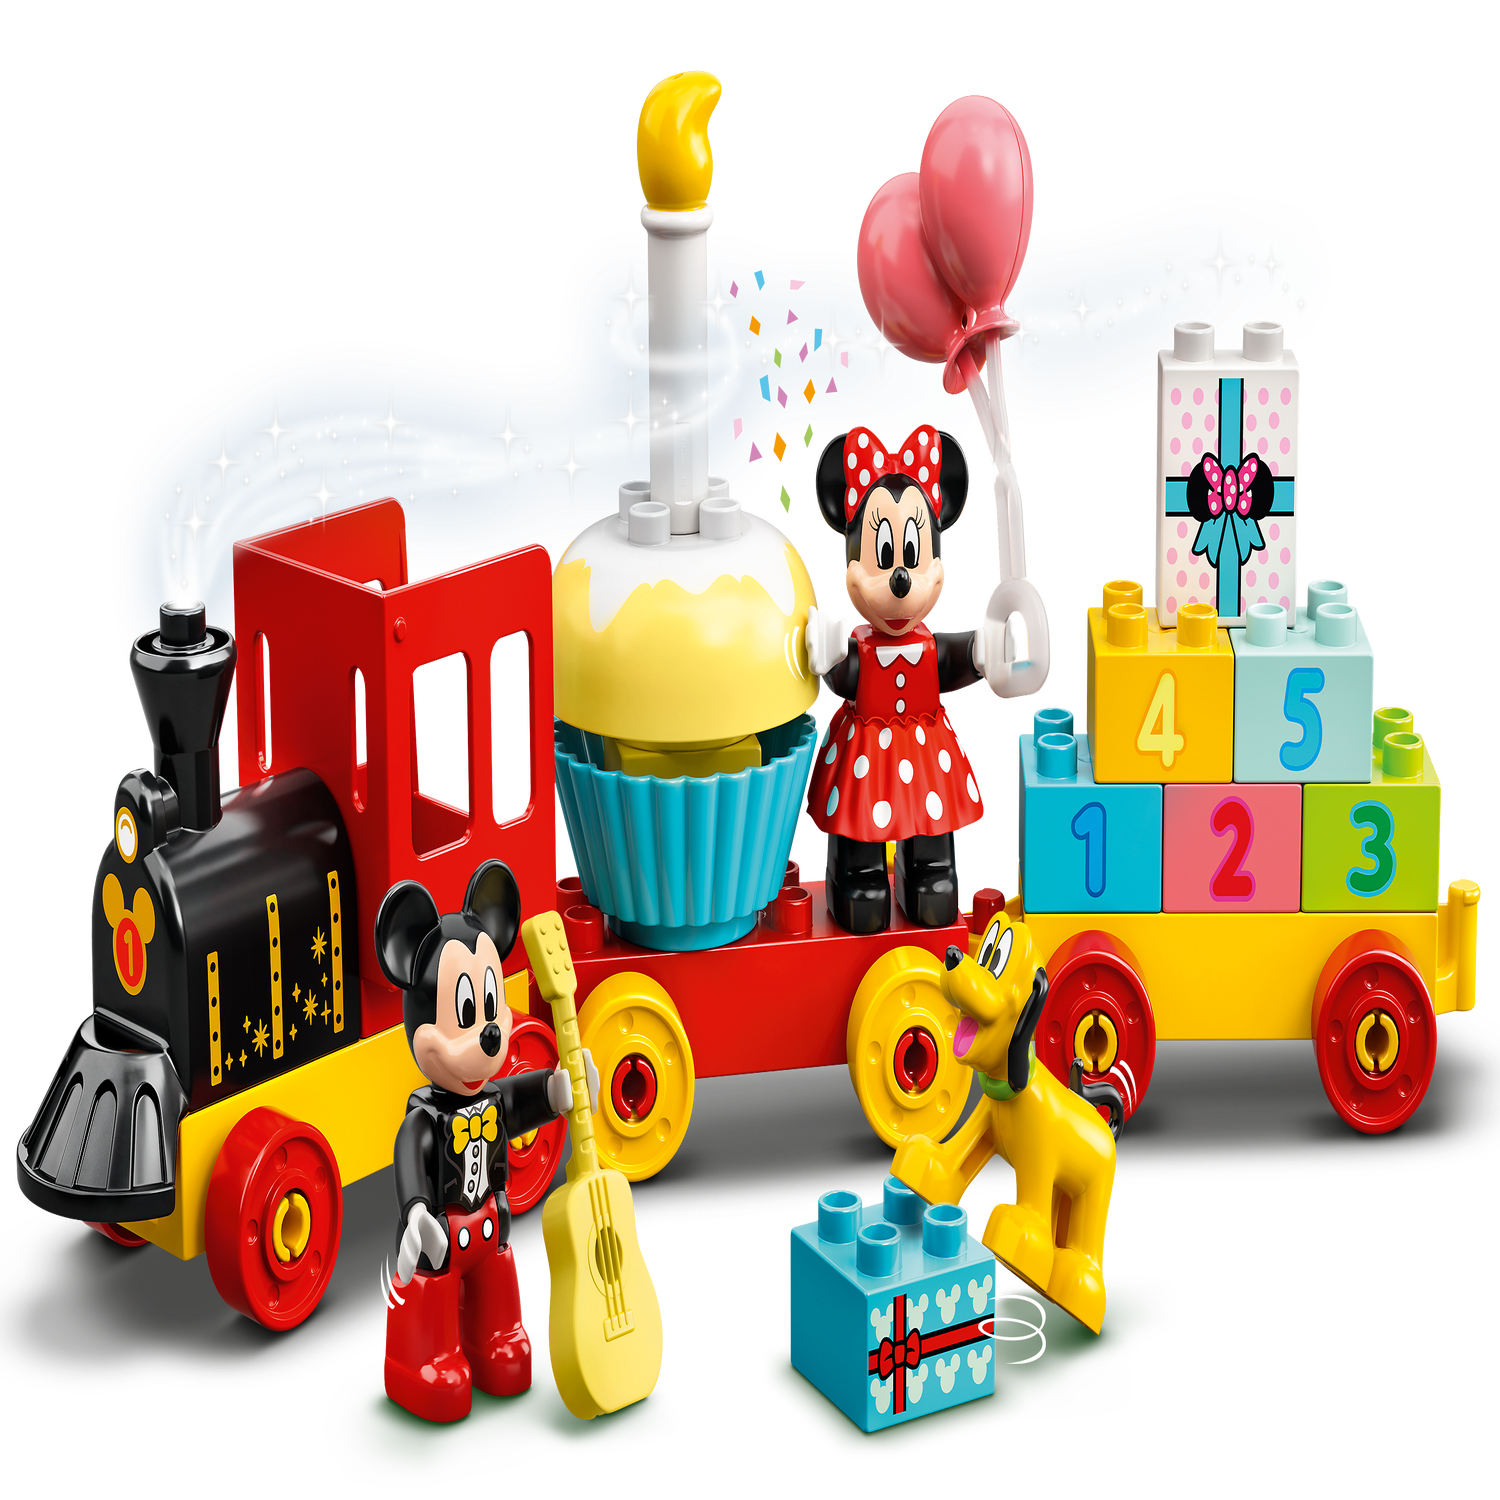 Jeu de construction Lego duplo Disney Le Train d'Anniversaire de Mickey et  Minnie 10941 –